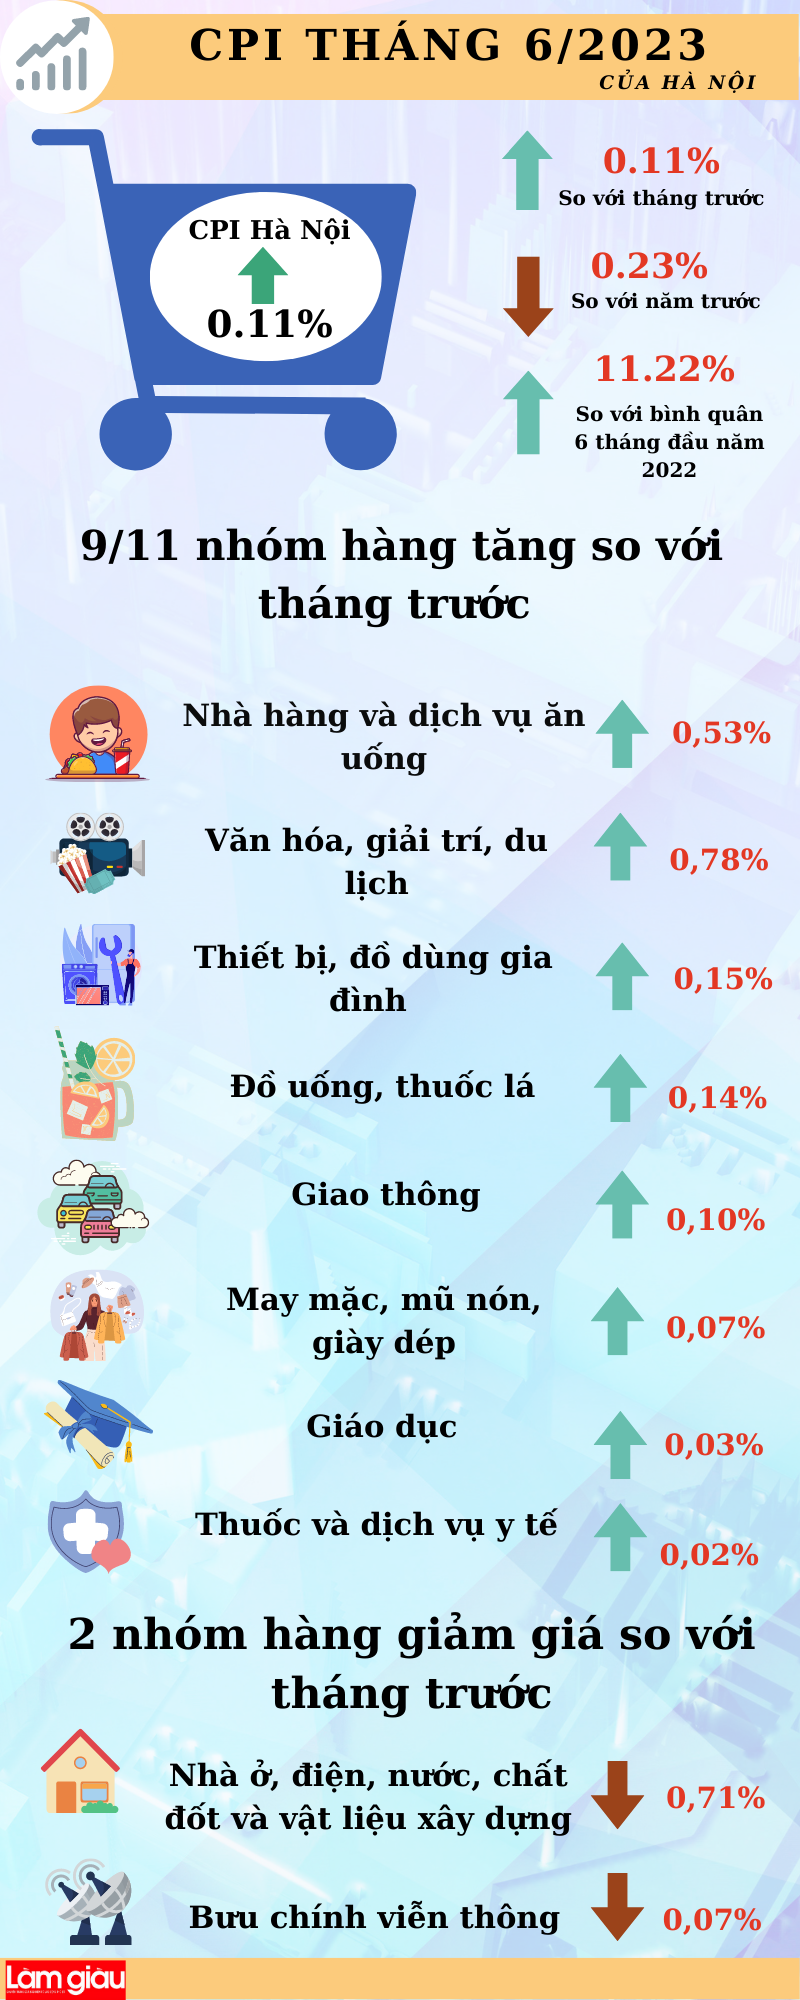 Tháng 6/2023, chỉ số giá tiêu dùng của Hà Nội tăng 0,11%